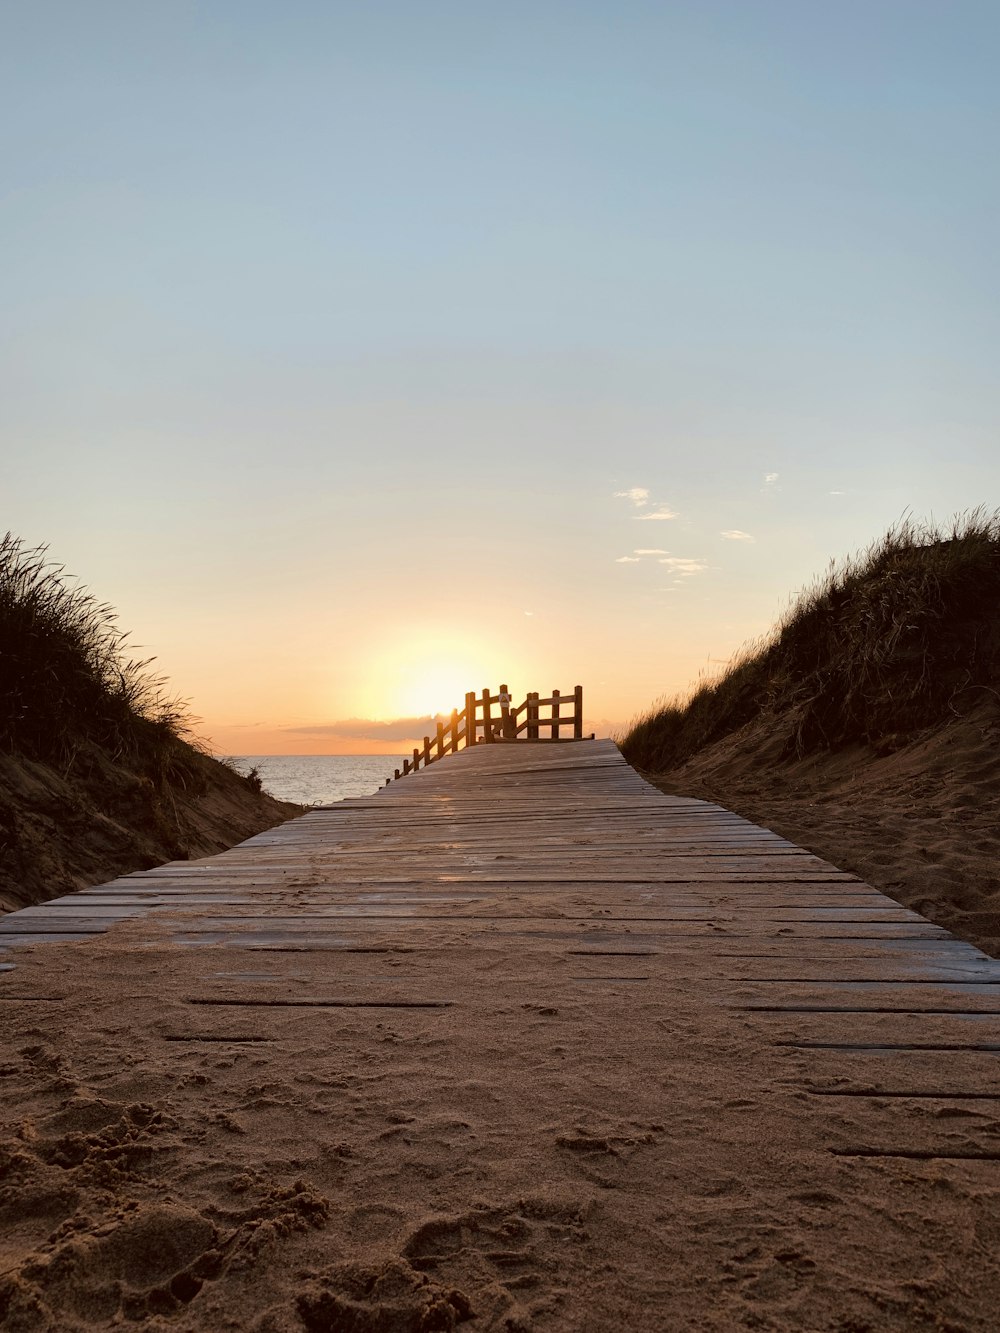 muelle de madera marrón en la playa durante la puesta del sol